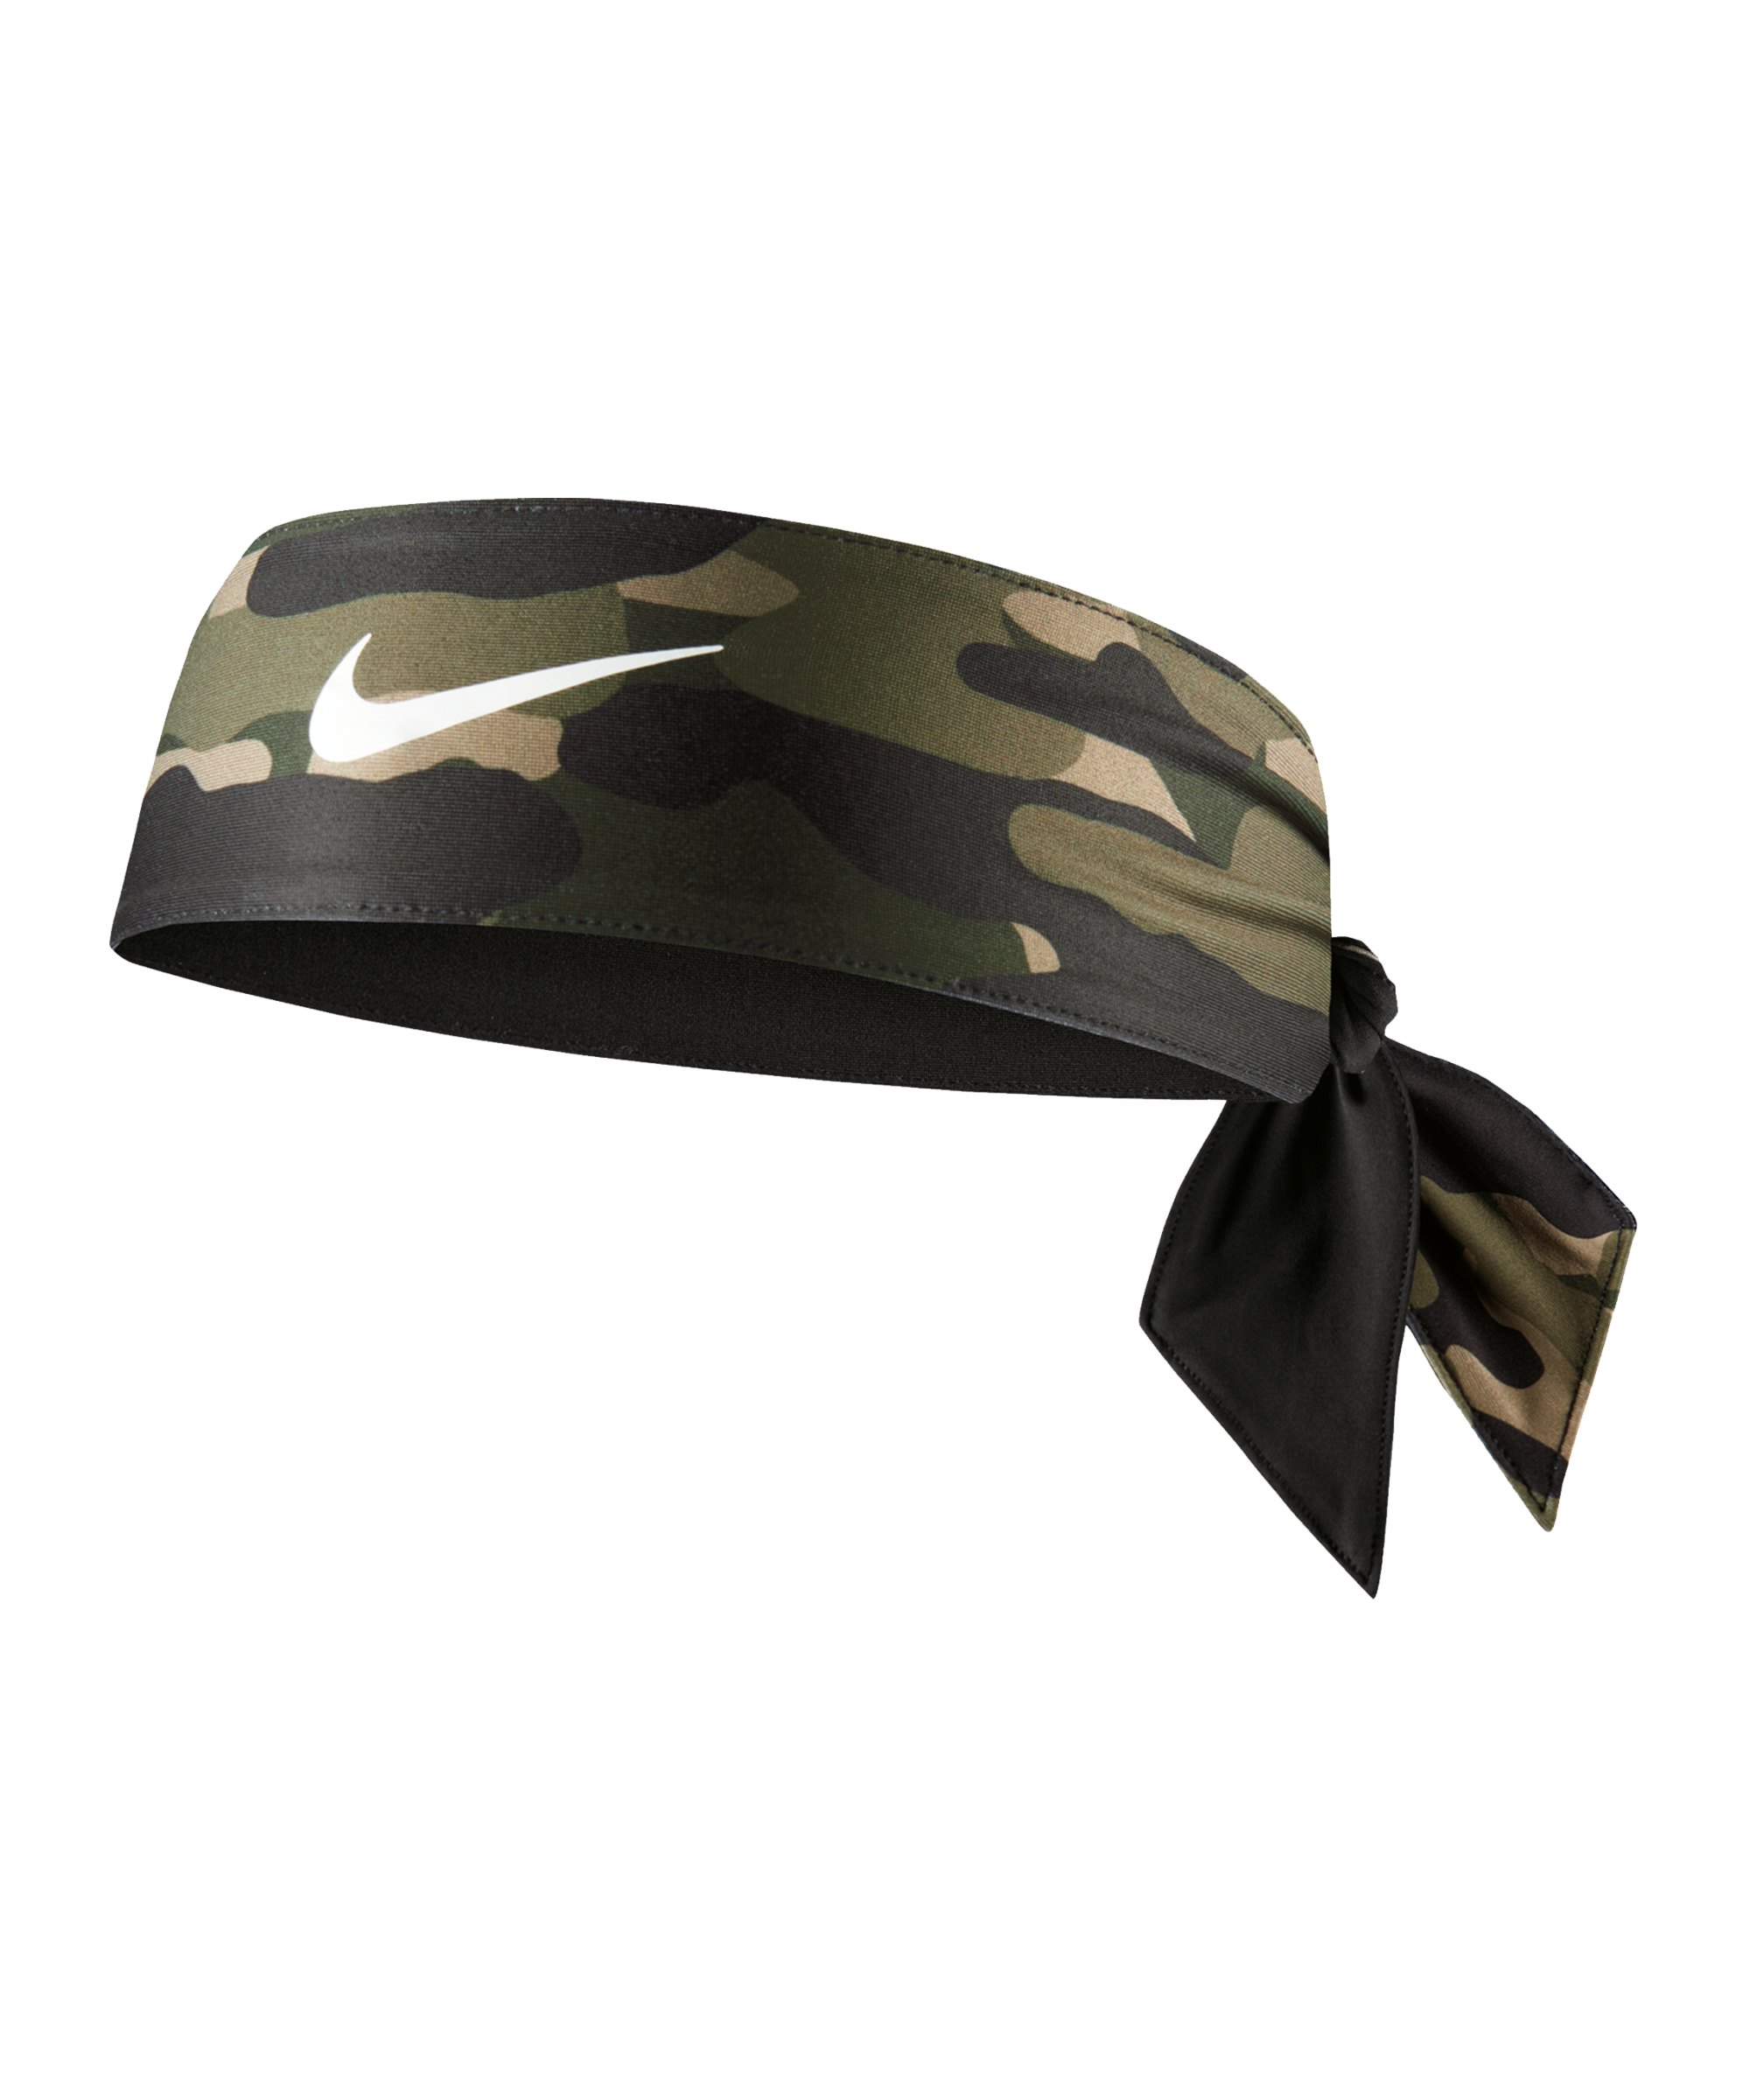 Nike Dri-FIT Head Tie 4.0 Haarband Grün F934 - gruen